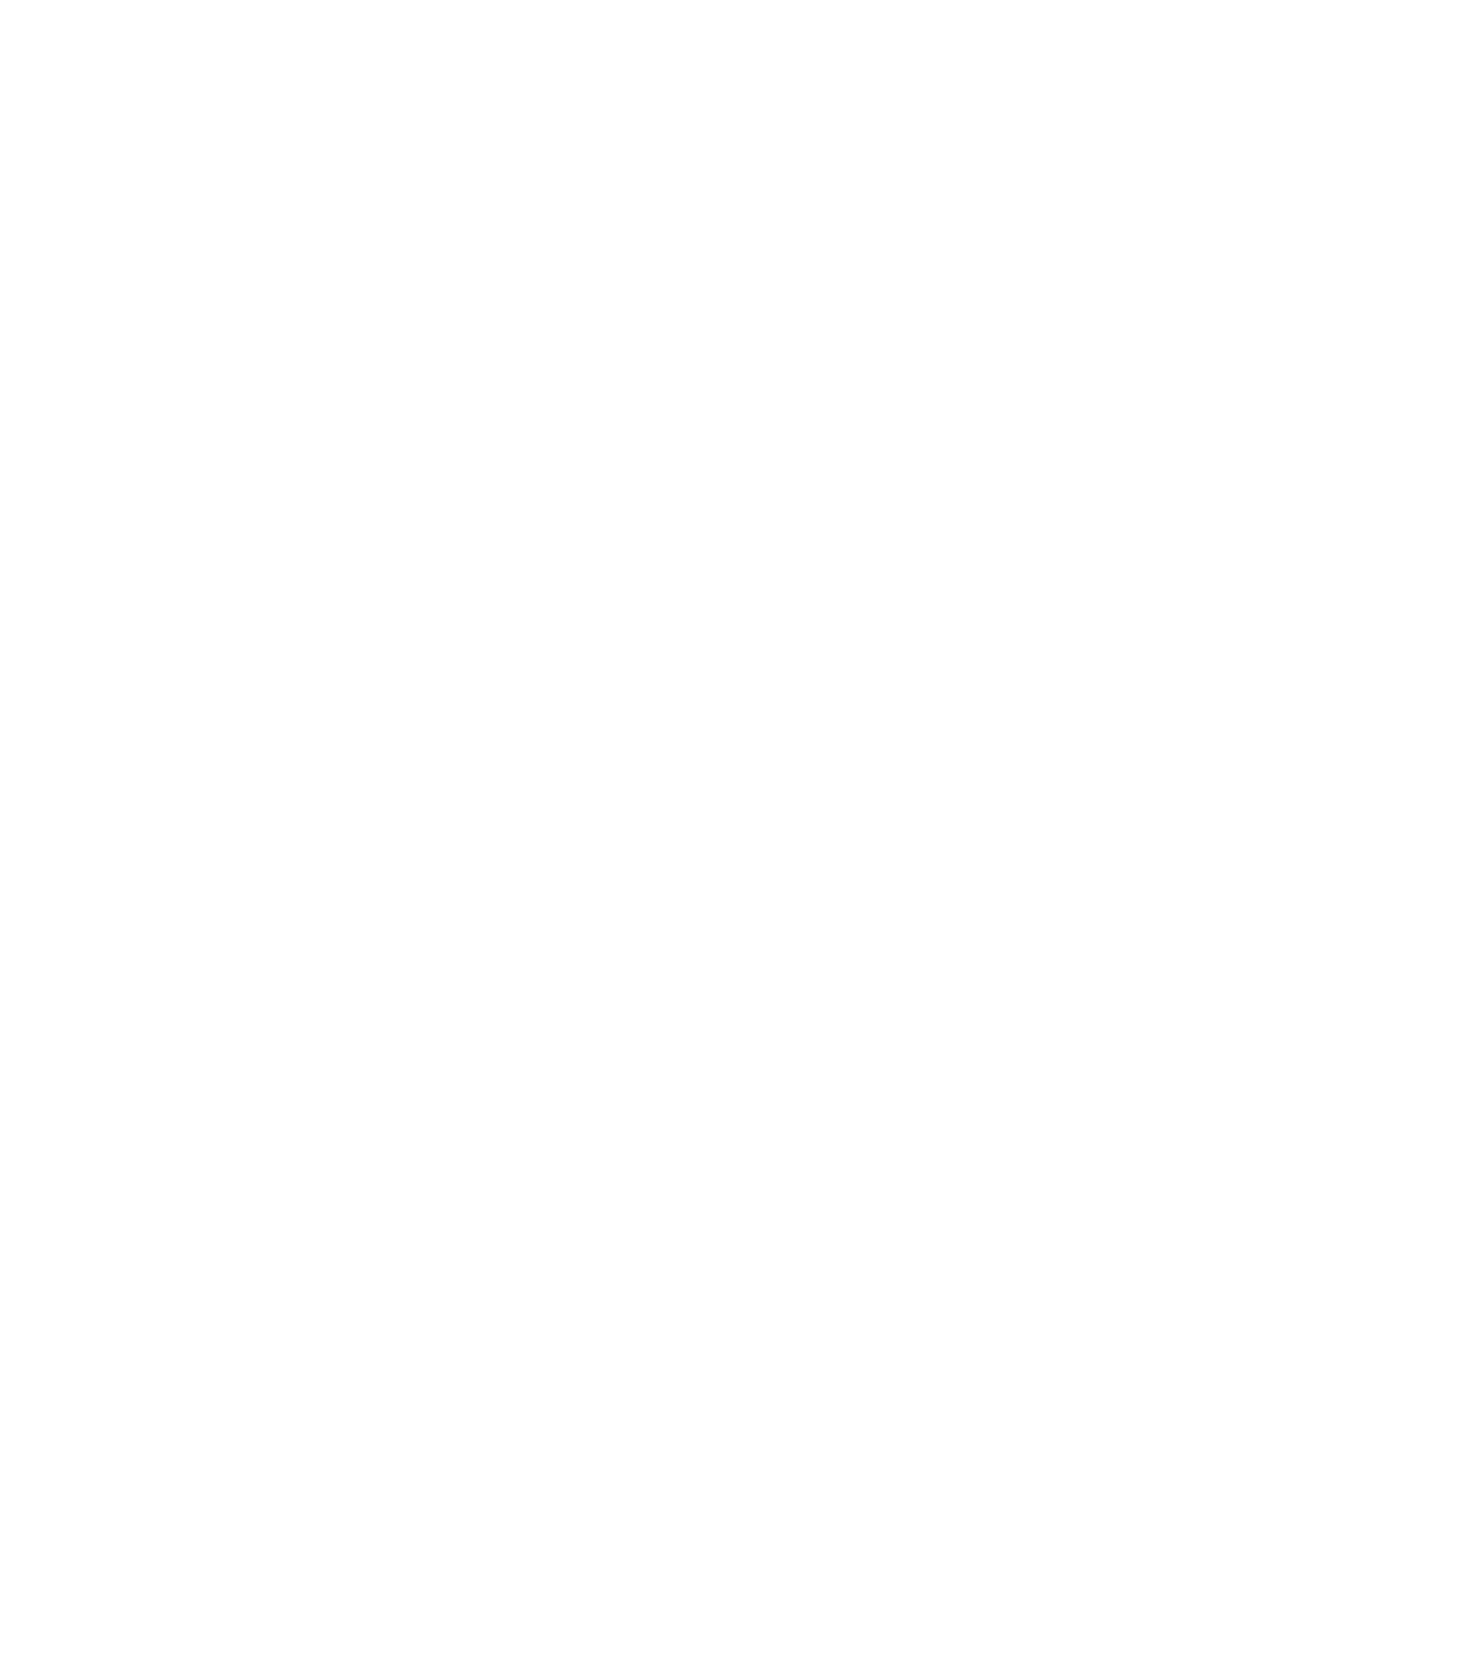 Верещагин В.П. Лодка на Волге. 1860-1909. Бумага, масло. 23,5х20,5. Пермская государственная художественная галерея